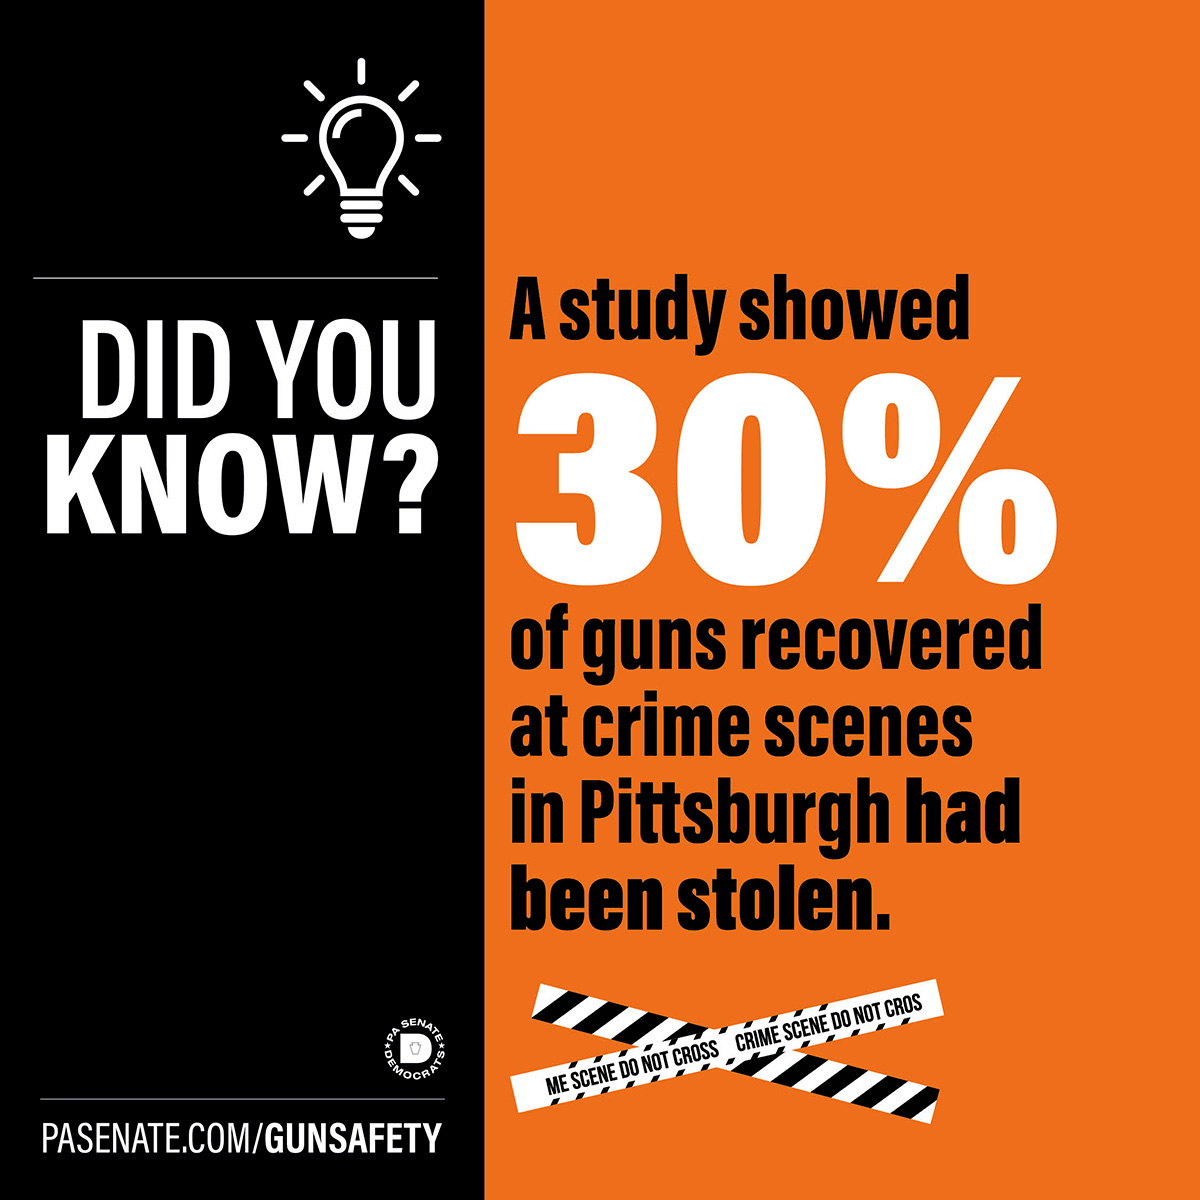 알고 계셨나요? 한 연구에 따르면 피츠버그의 범죄 현장에서 회수된 총기 중 30%가 도난당한 총기라는 사실이 밝혀졌습니다.